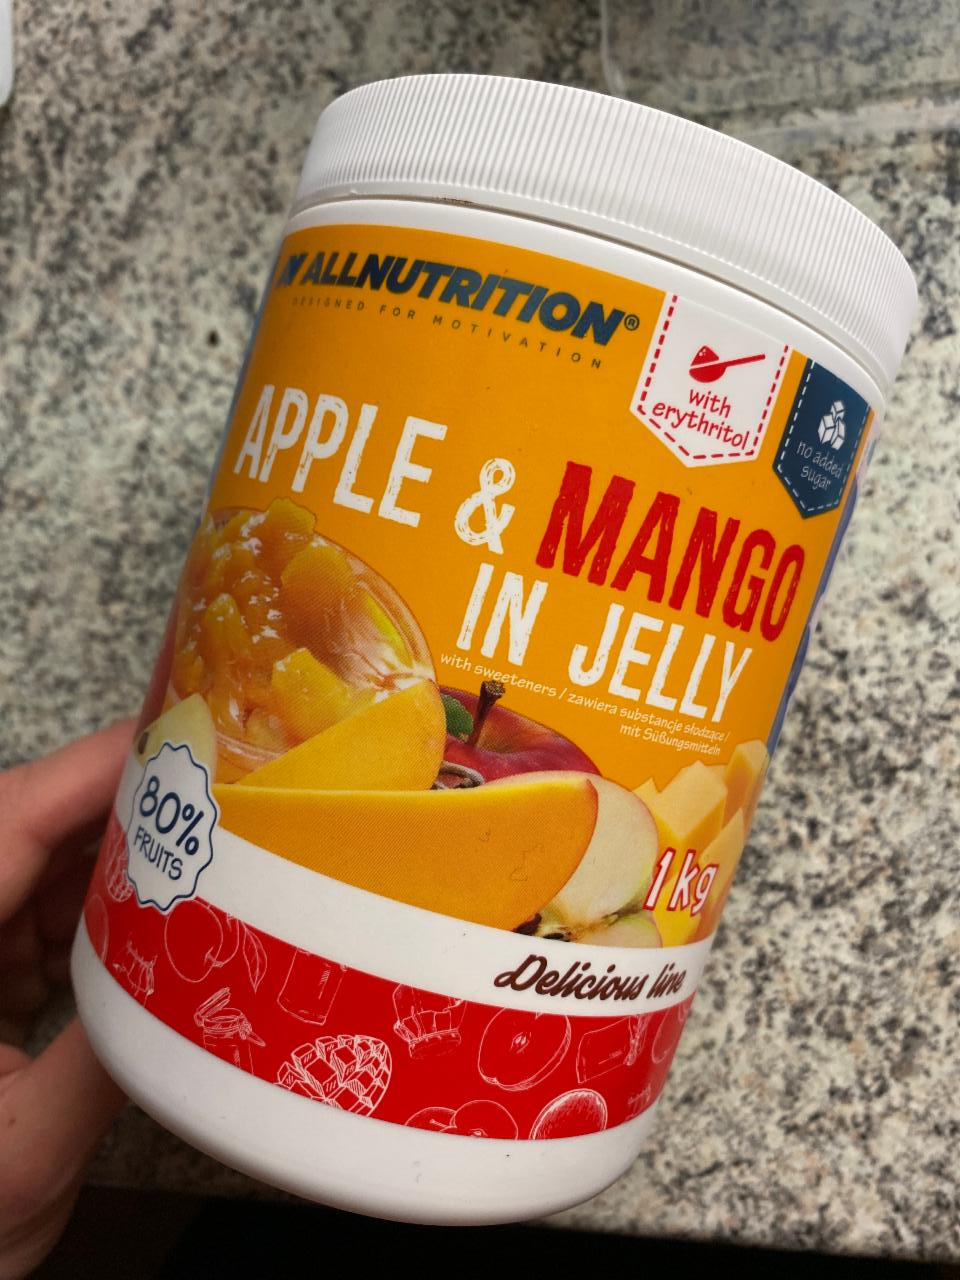 Fotografie - Apple & mango in jelly Allnutrition